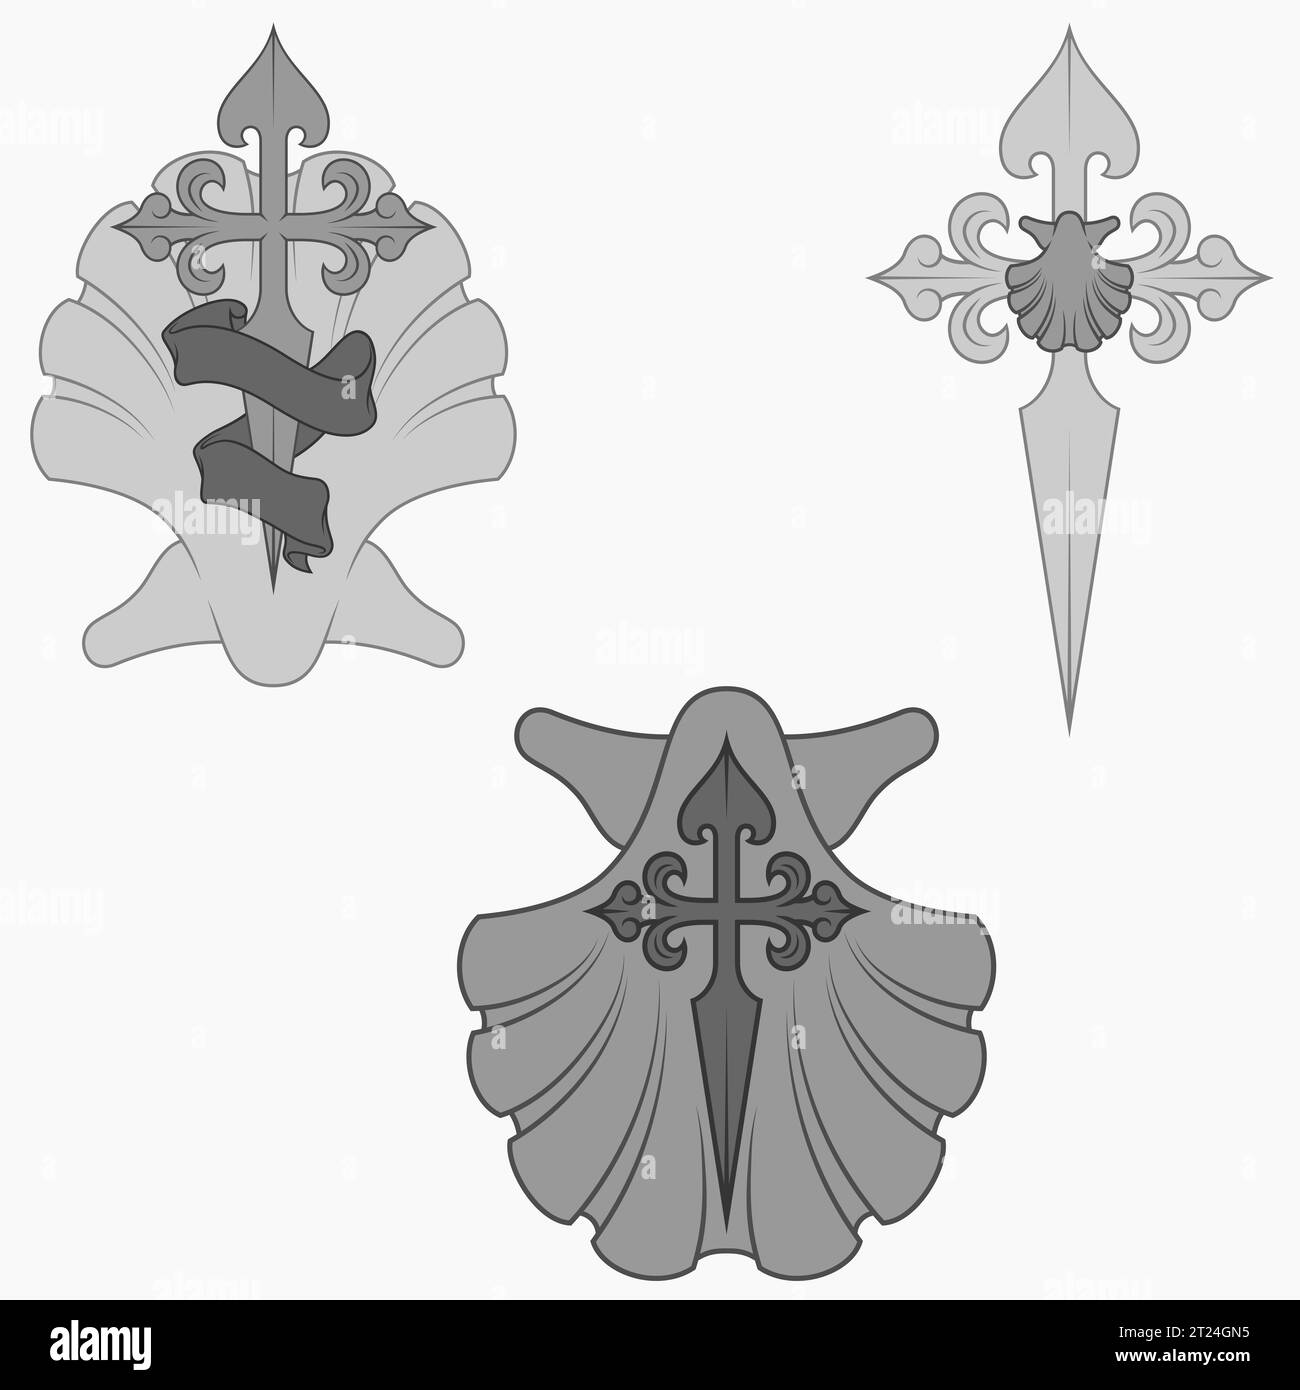 Conception vectorielle de symbologie chrétienne de l'apôtre santiago, santiago croix avec pétoncle, épée et ruban Illustration de Vecteur